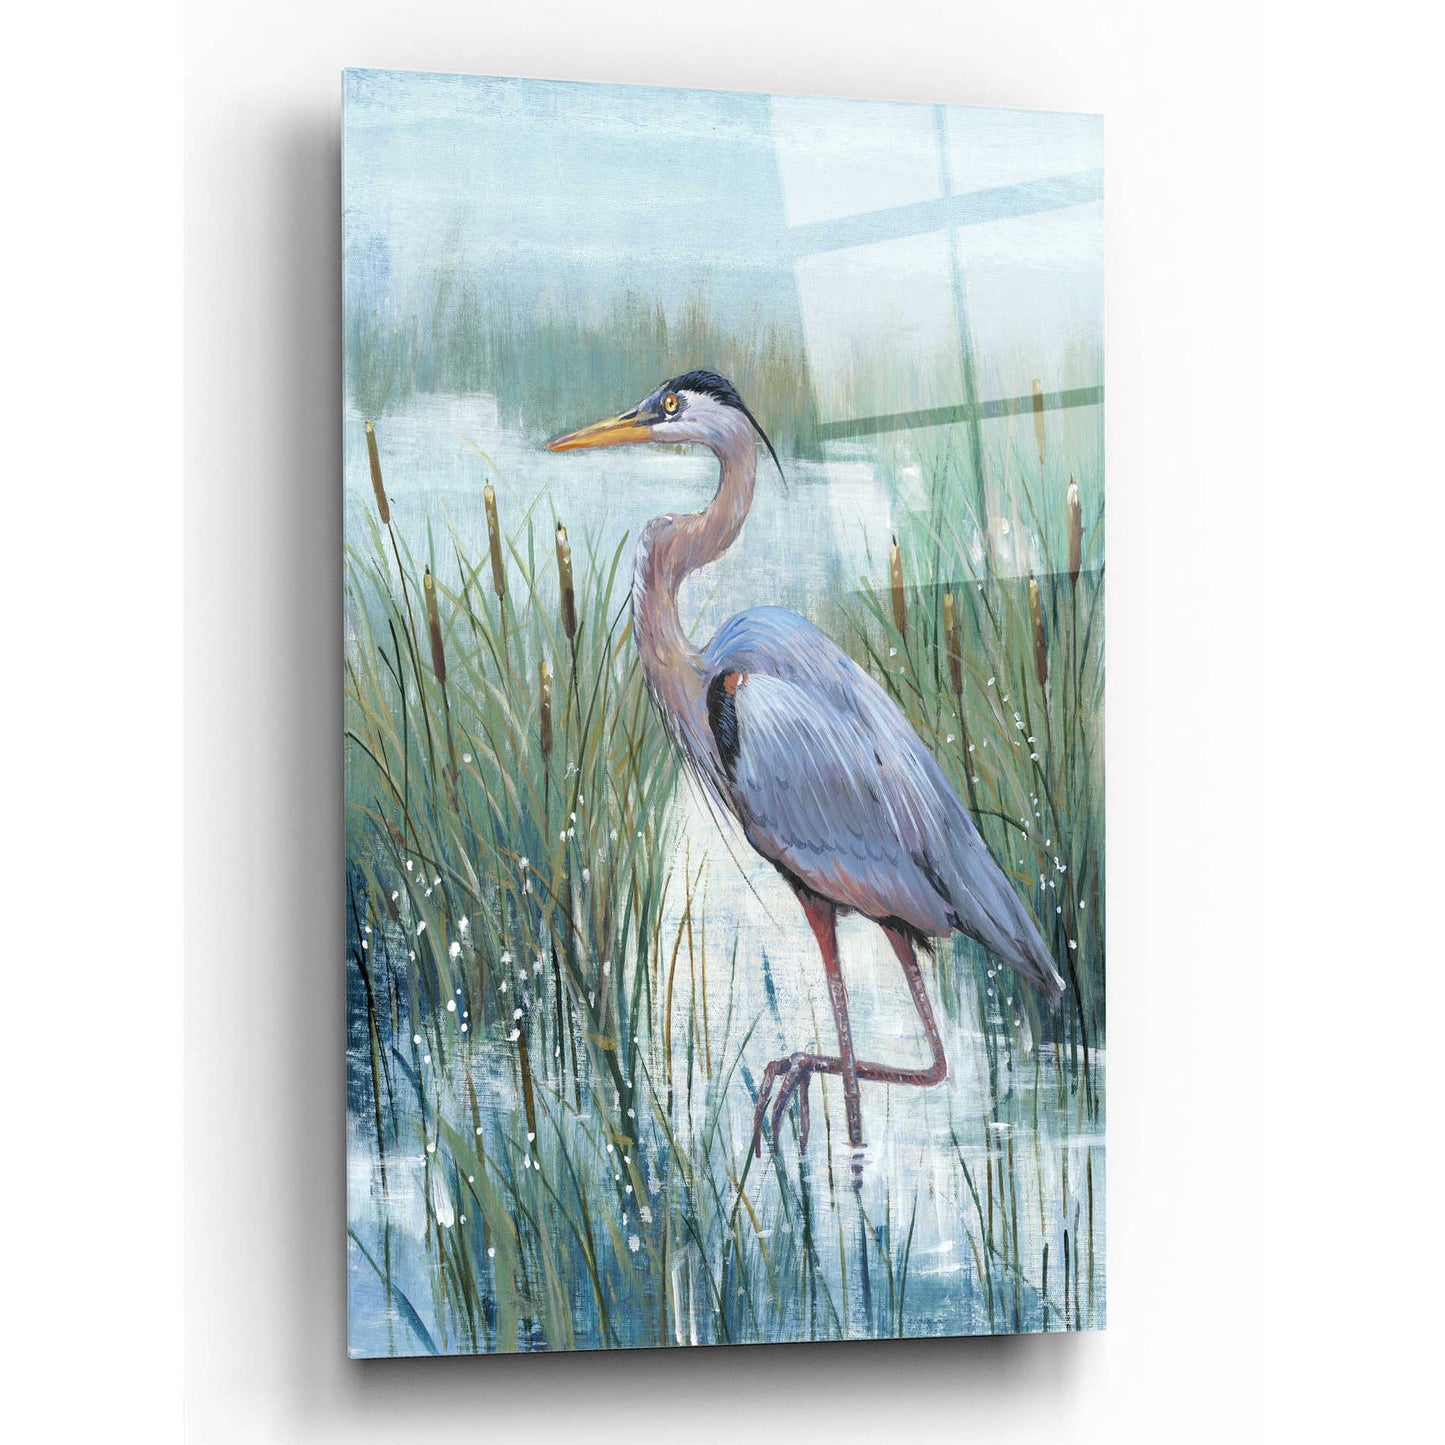 Epic Art 'Marsh Heron II' by Tim O'Toole, Acrylic Glass Wall Art